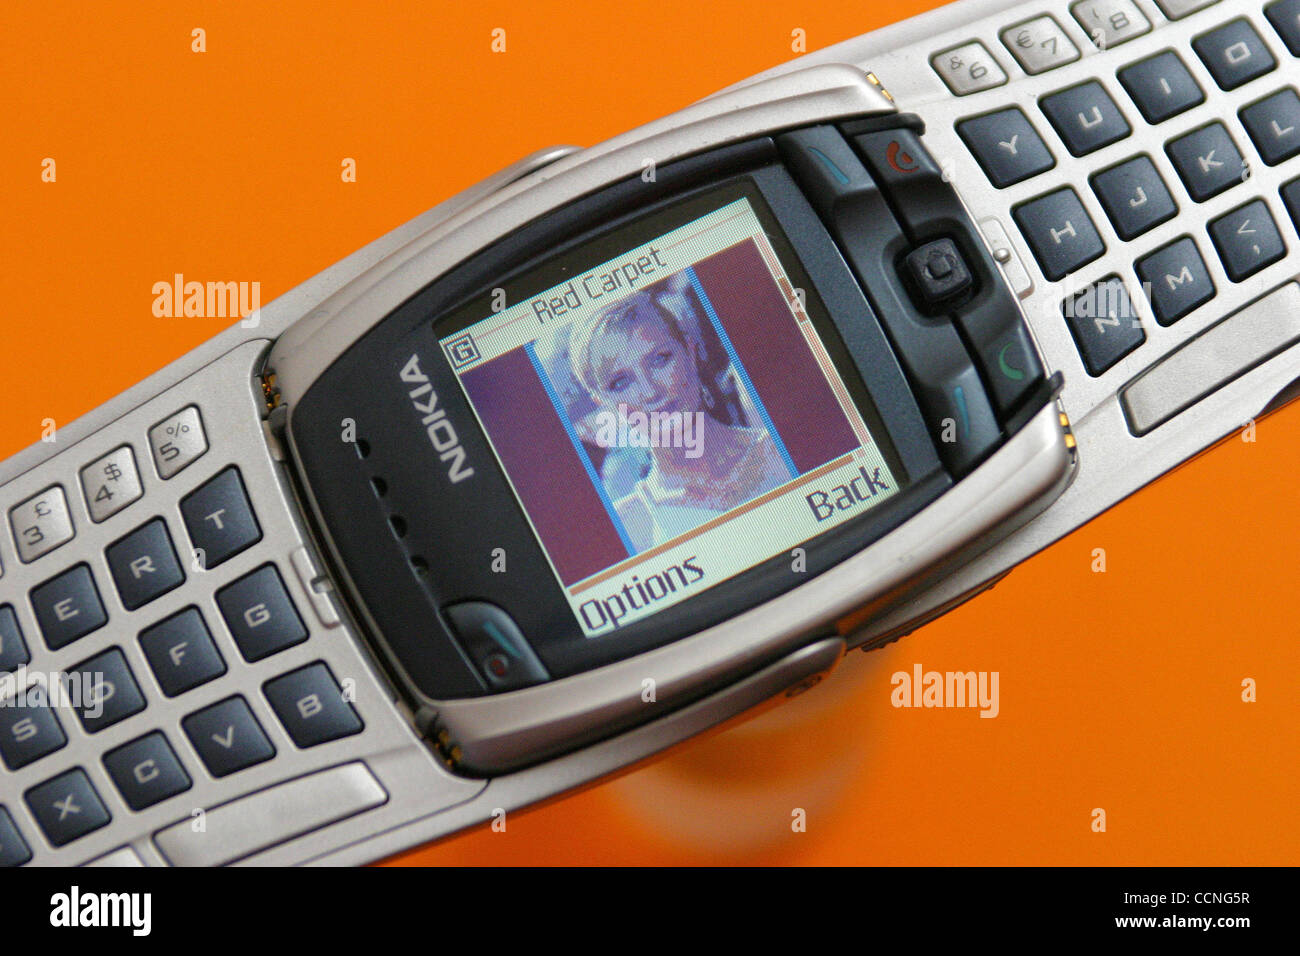 7. Oktober 2004; Laguna Beach, Kalifornien, USA; Handys, handheld-Geräte  wie PDAs werden immer leistungsfähiger und Bilder (mit eingebauten Kameras)  und Dowload Bilder aufnehmen können. Dieses Nokia Handy-Modell gezeigt  Bilder als Bildschirmschoner ...